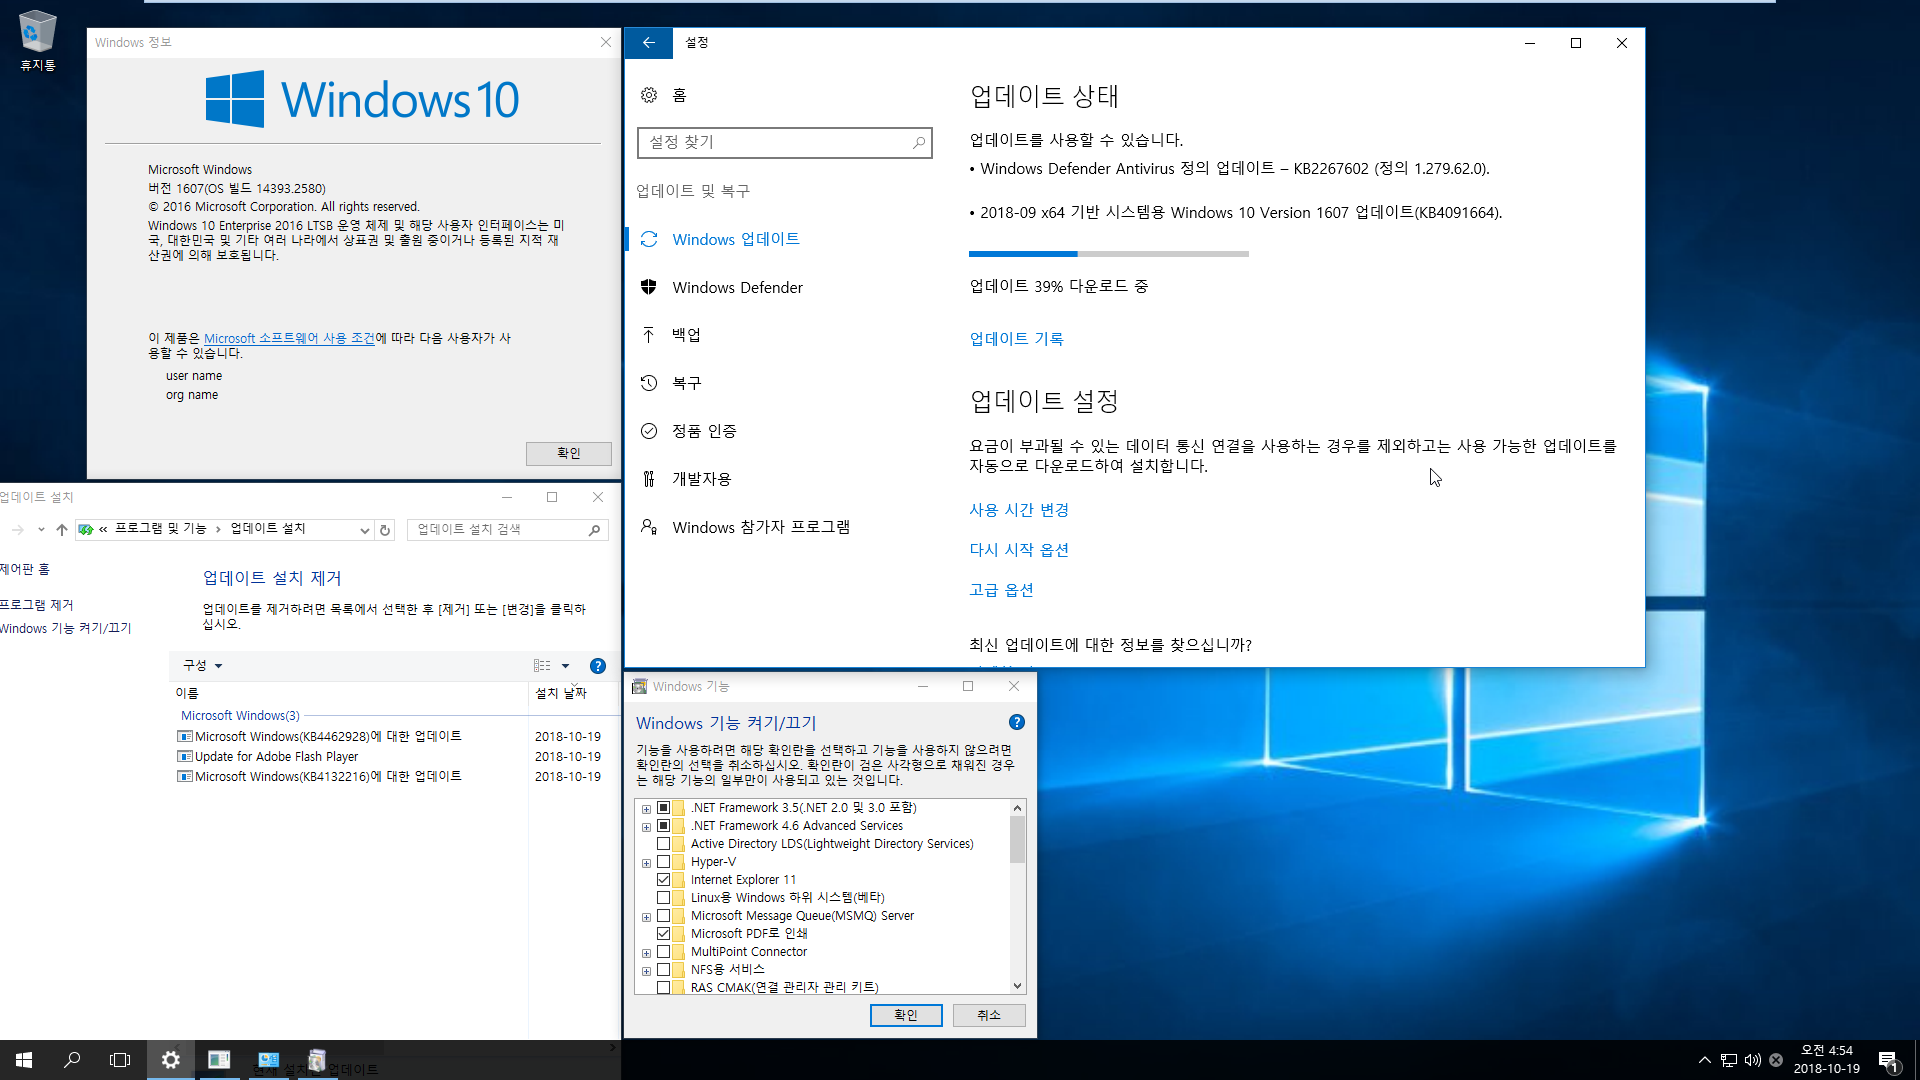 Windows 10 수시 업데이트 2018-10-19 금요일 [한국시간] 나왔네요 - Windows 10 버전1607용 누적 업데이트 KB4462928 (OS 빌드 14393.2580) 통합중 입니다 2018-10-19_045442.png